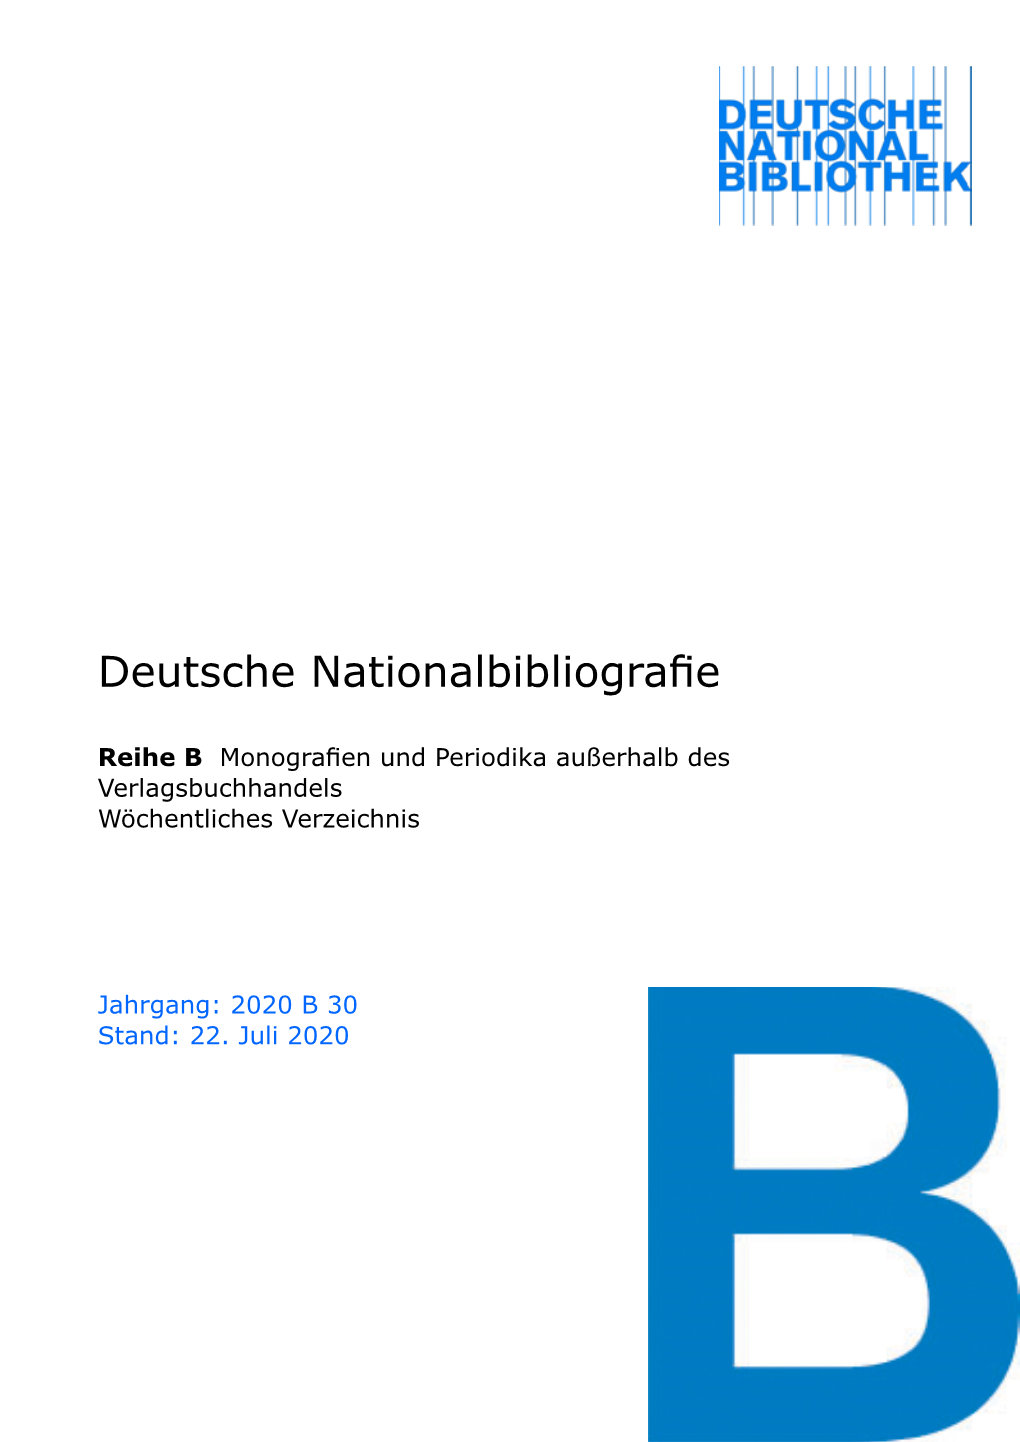 Deutsche Nationalbibliografie 2020 B 30